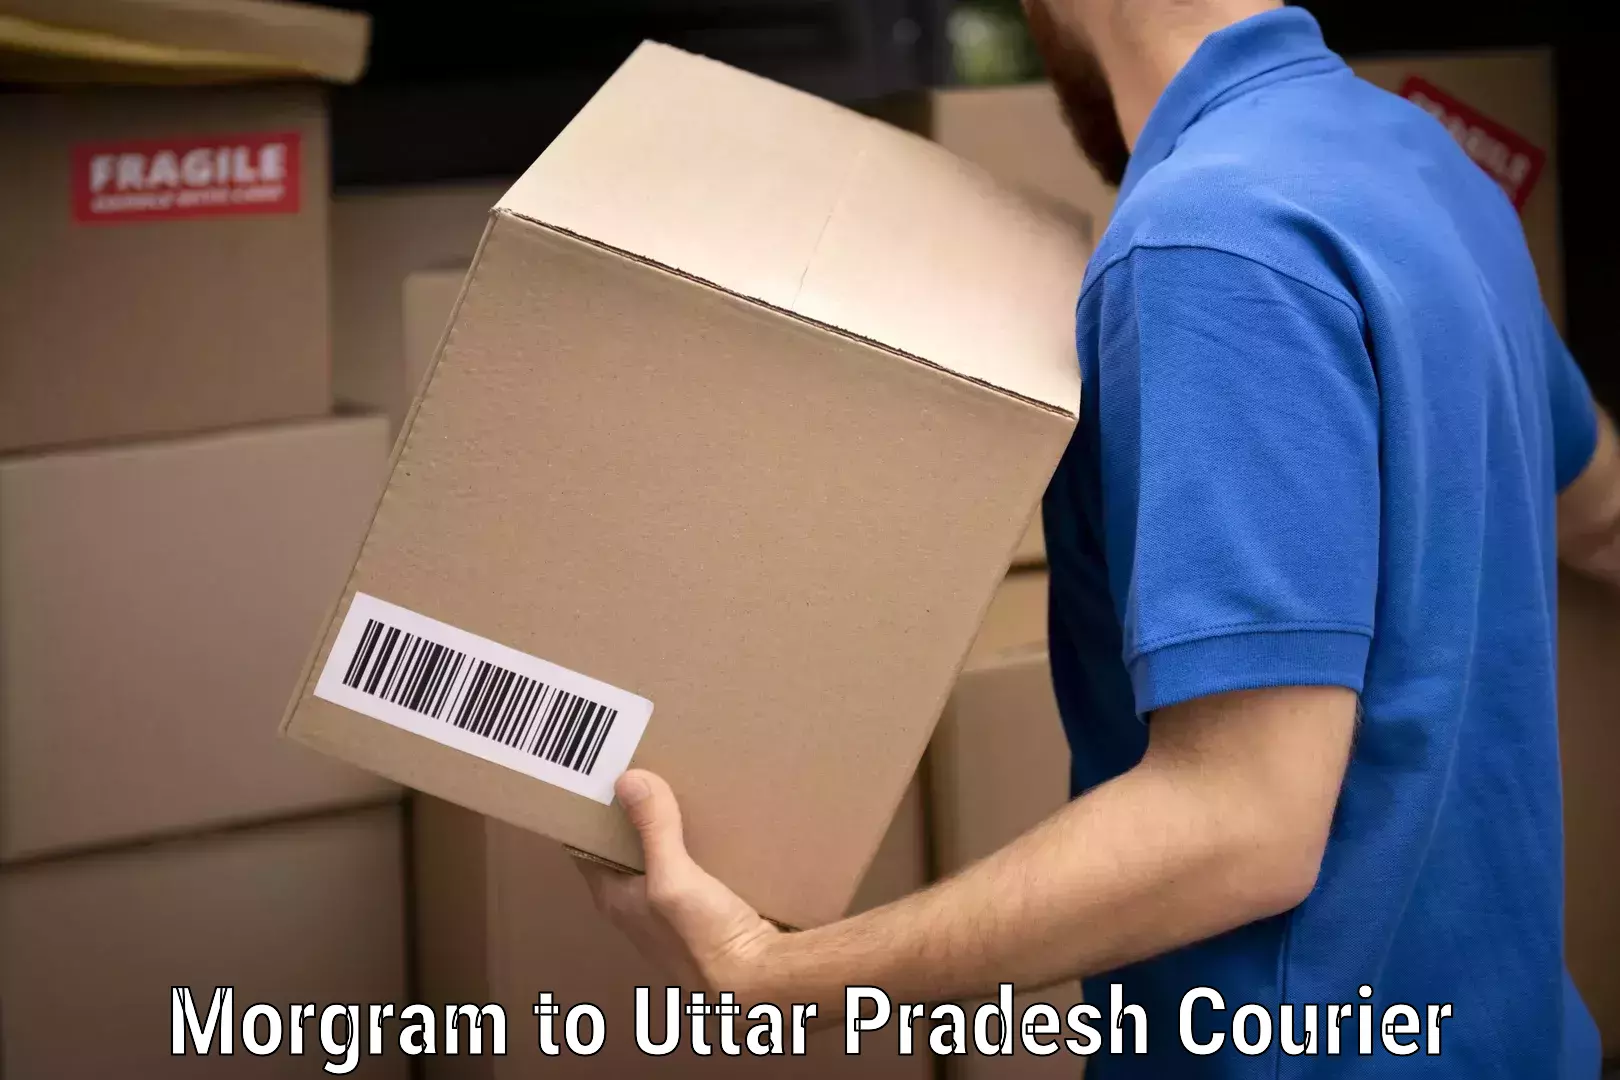 Household moving experts Morgram to Uttar Pradesh